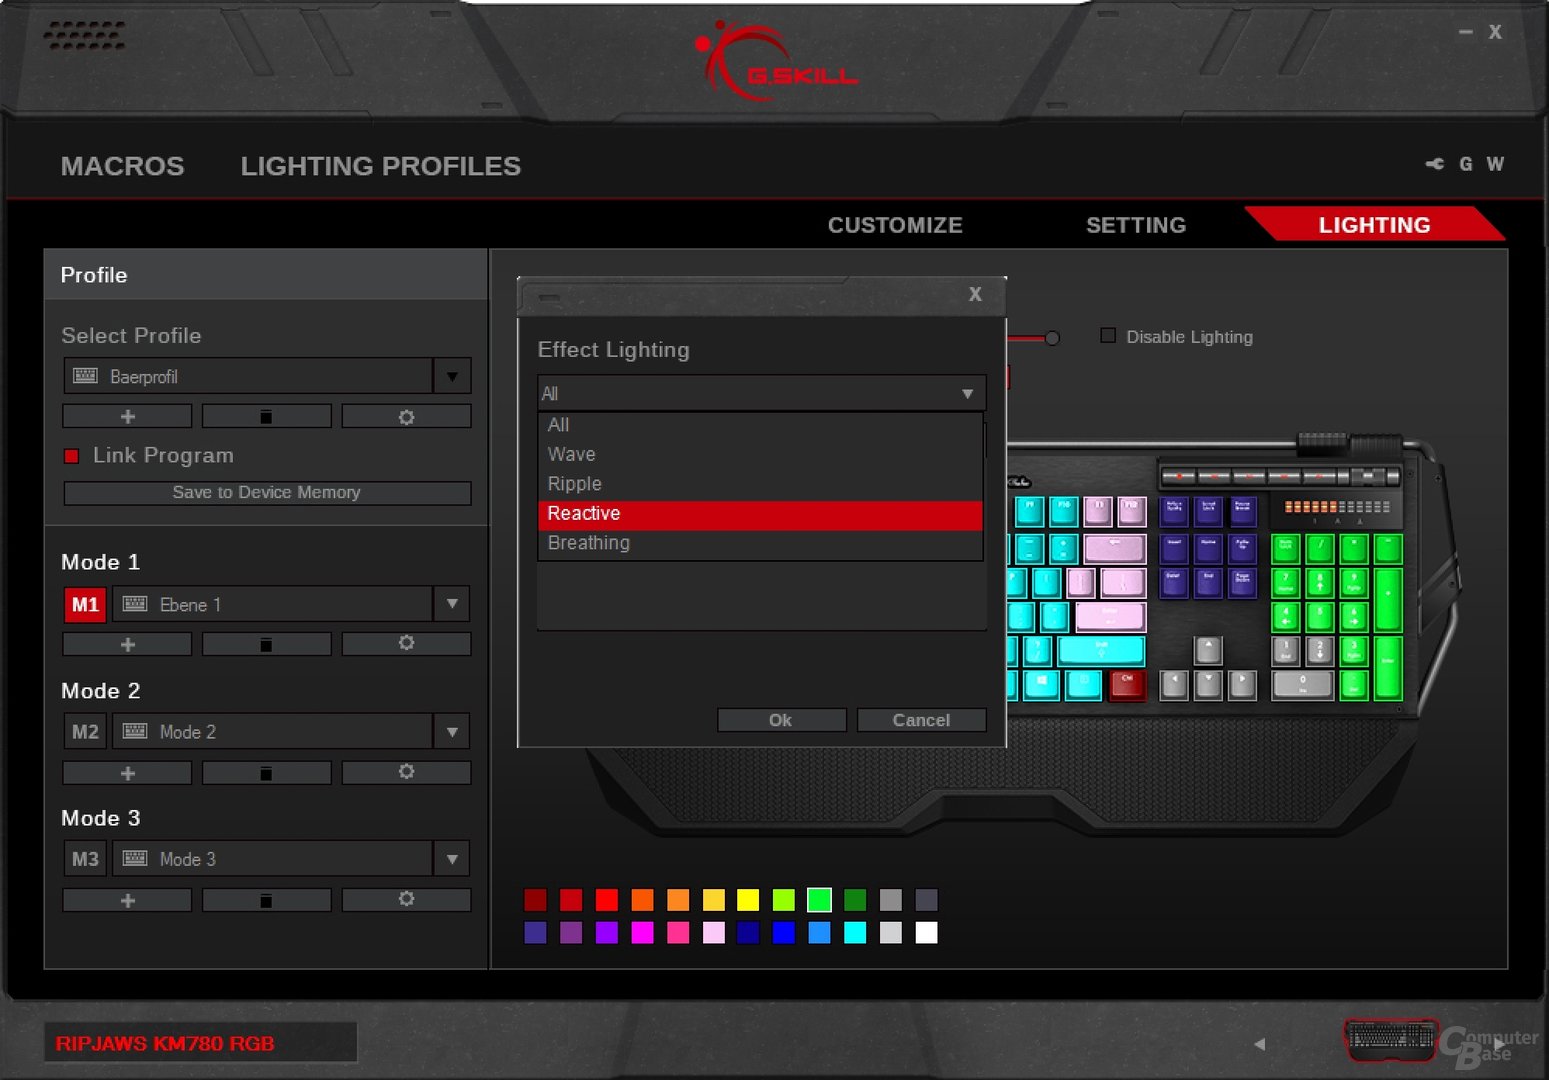 Leuchtmodi können nur für die gesamte Tastatur bei einfarbiger Hintergrundbeleuchtung gewählt werden